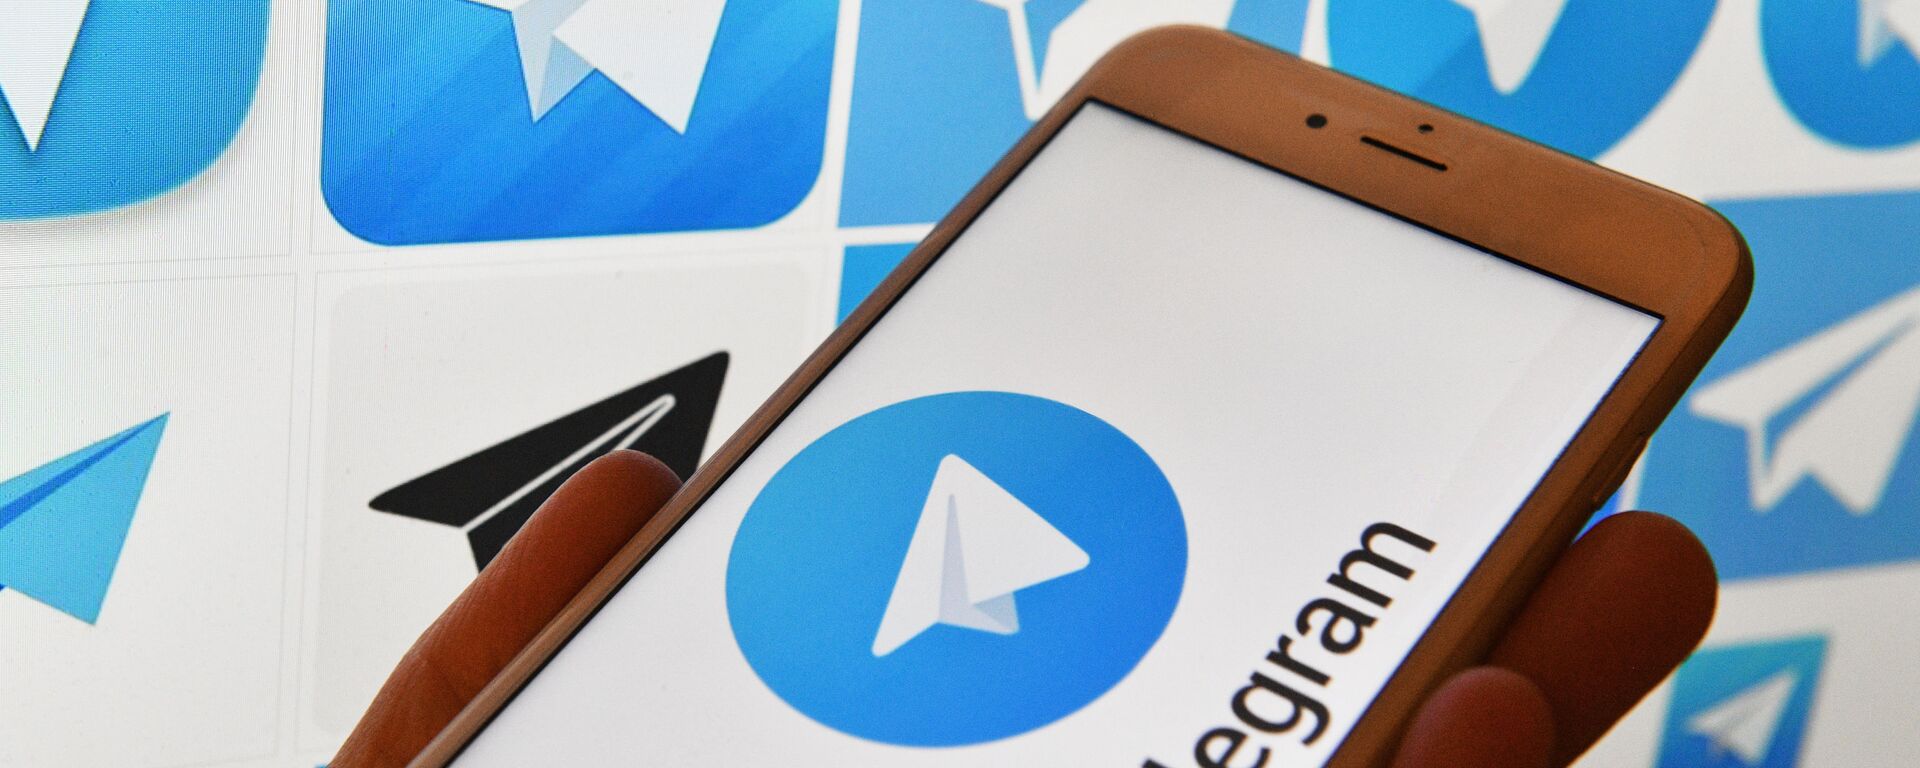 Логотип мессенджера Telegram на экранах смартфона и компьютера - Sputnik Узбекистан, 1920, 19.03.2021